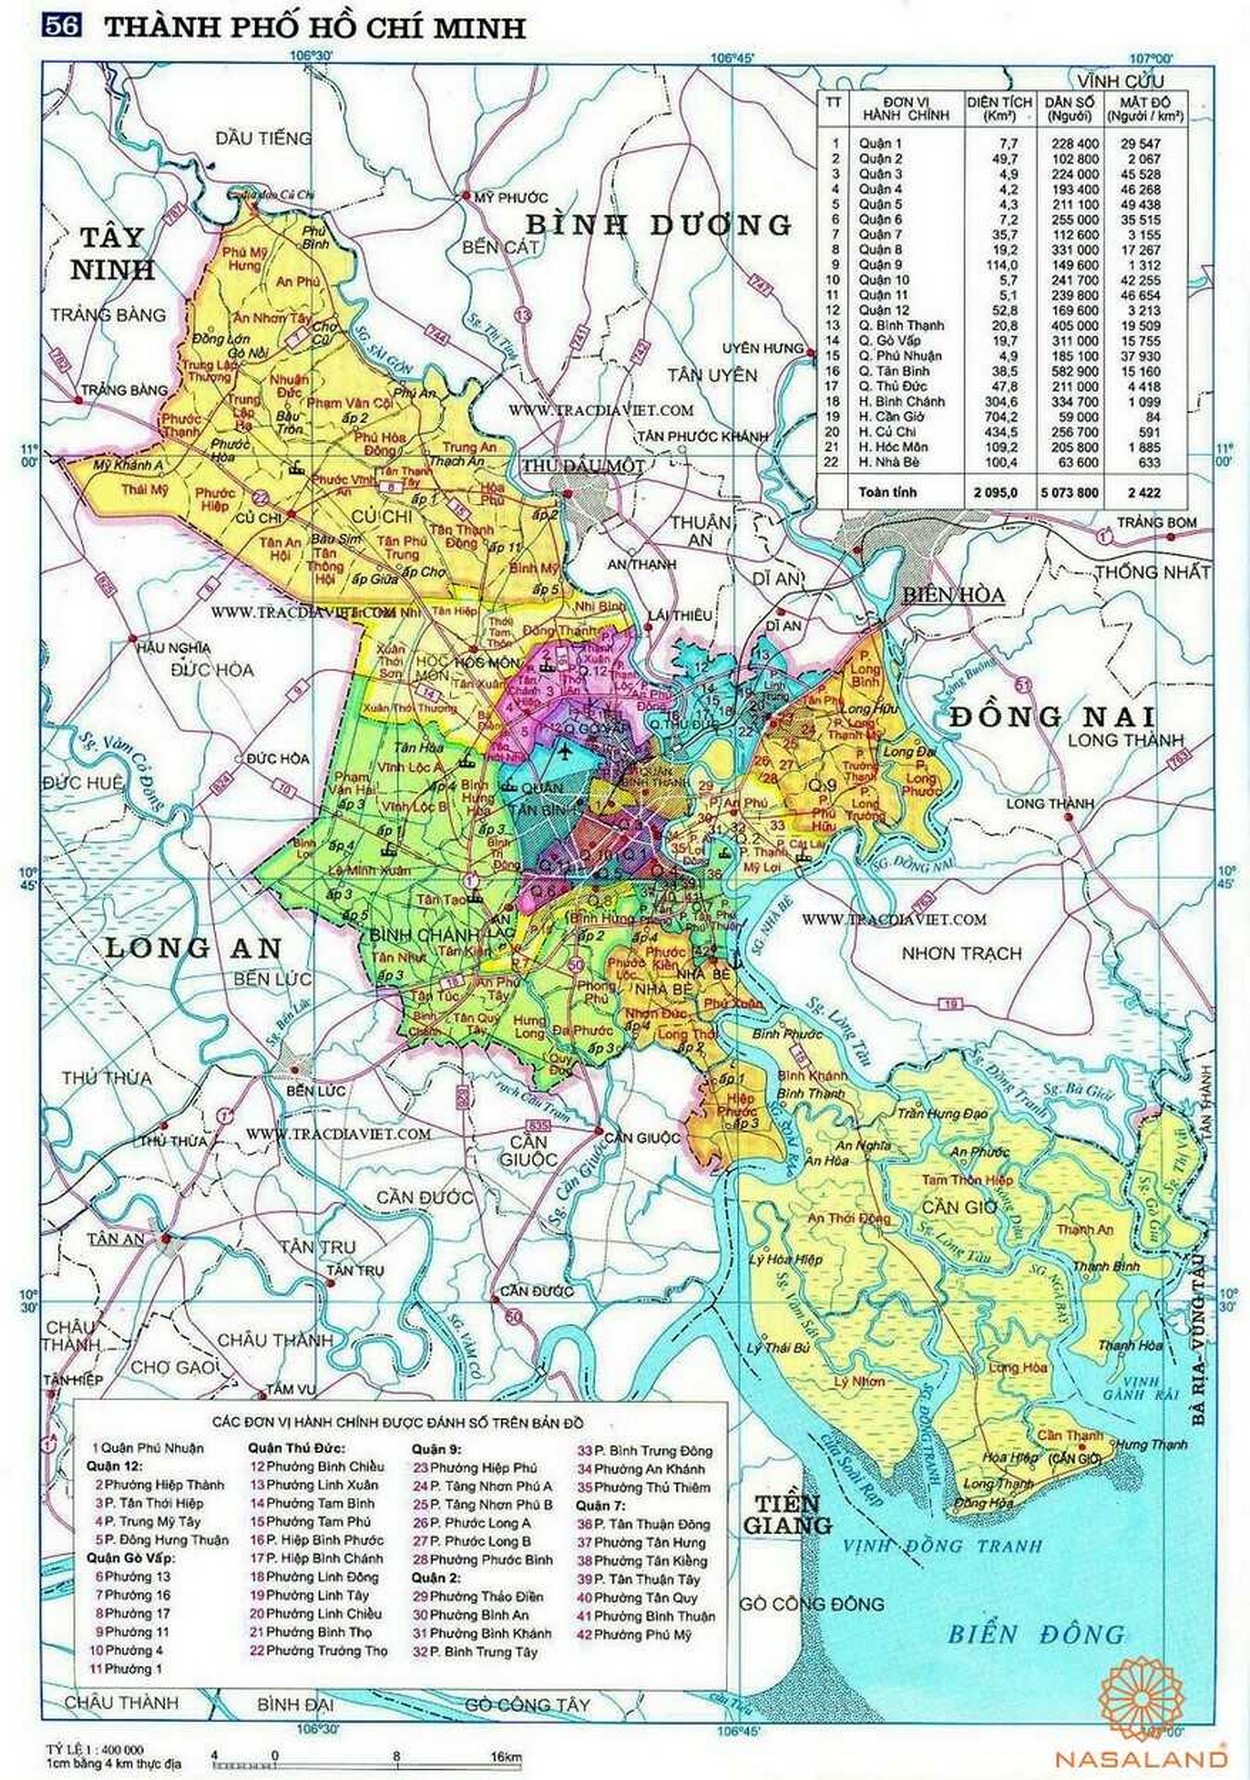 Bản đồ địa chính Thành phố Hồ Chí Minh - ký hiệu trên bản đồ quy hoạch đất